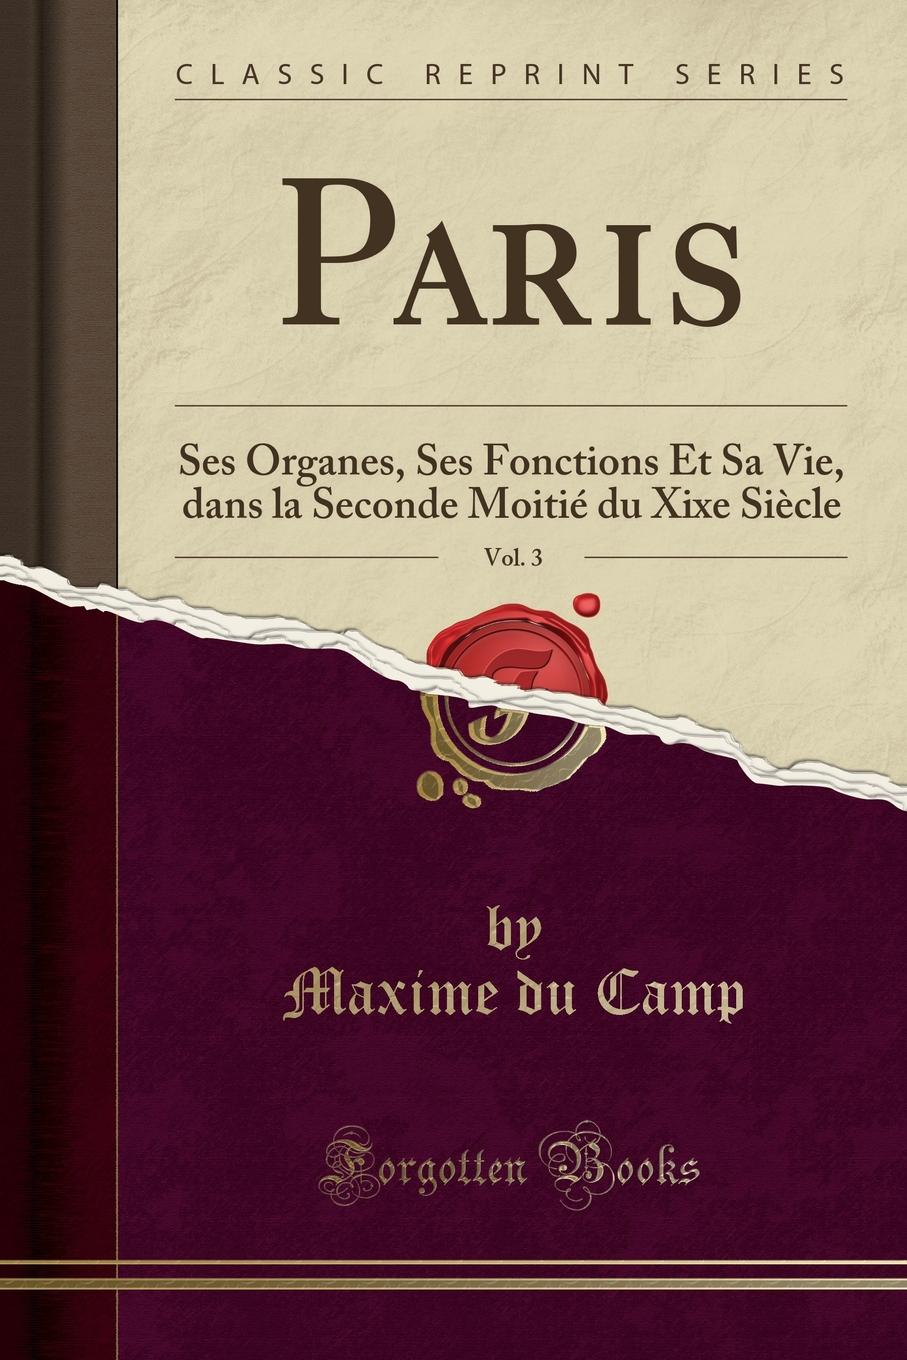 Paris, Vol. 3. Ses Organes, Ses Fonctions Et Sa Vie, dans la Seconde Moitie du Xixe Siecle (Classic Reprint)